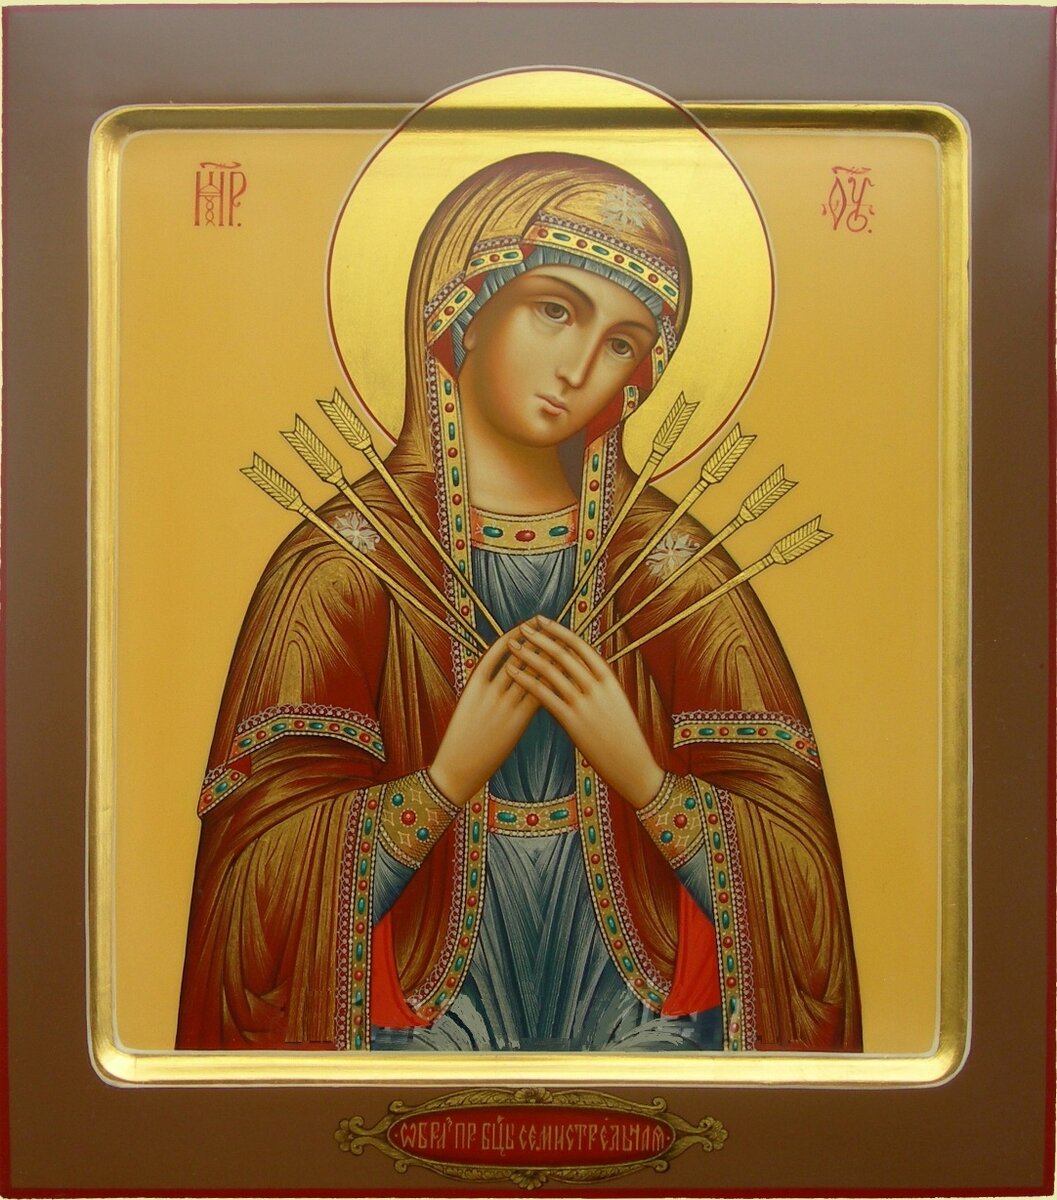 Икона Богородицы: все виды резных икон Божьей матери